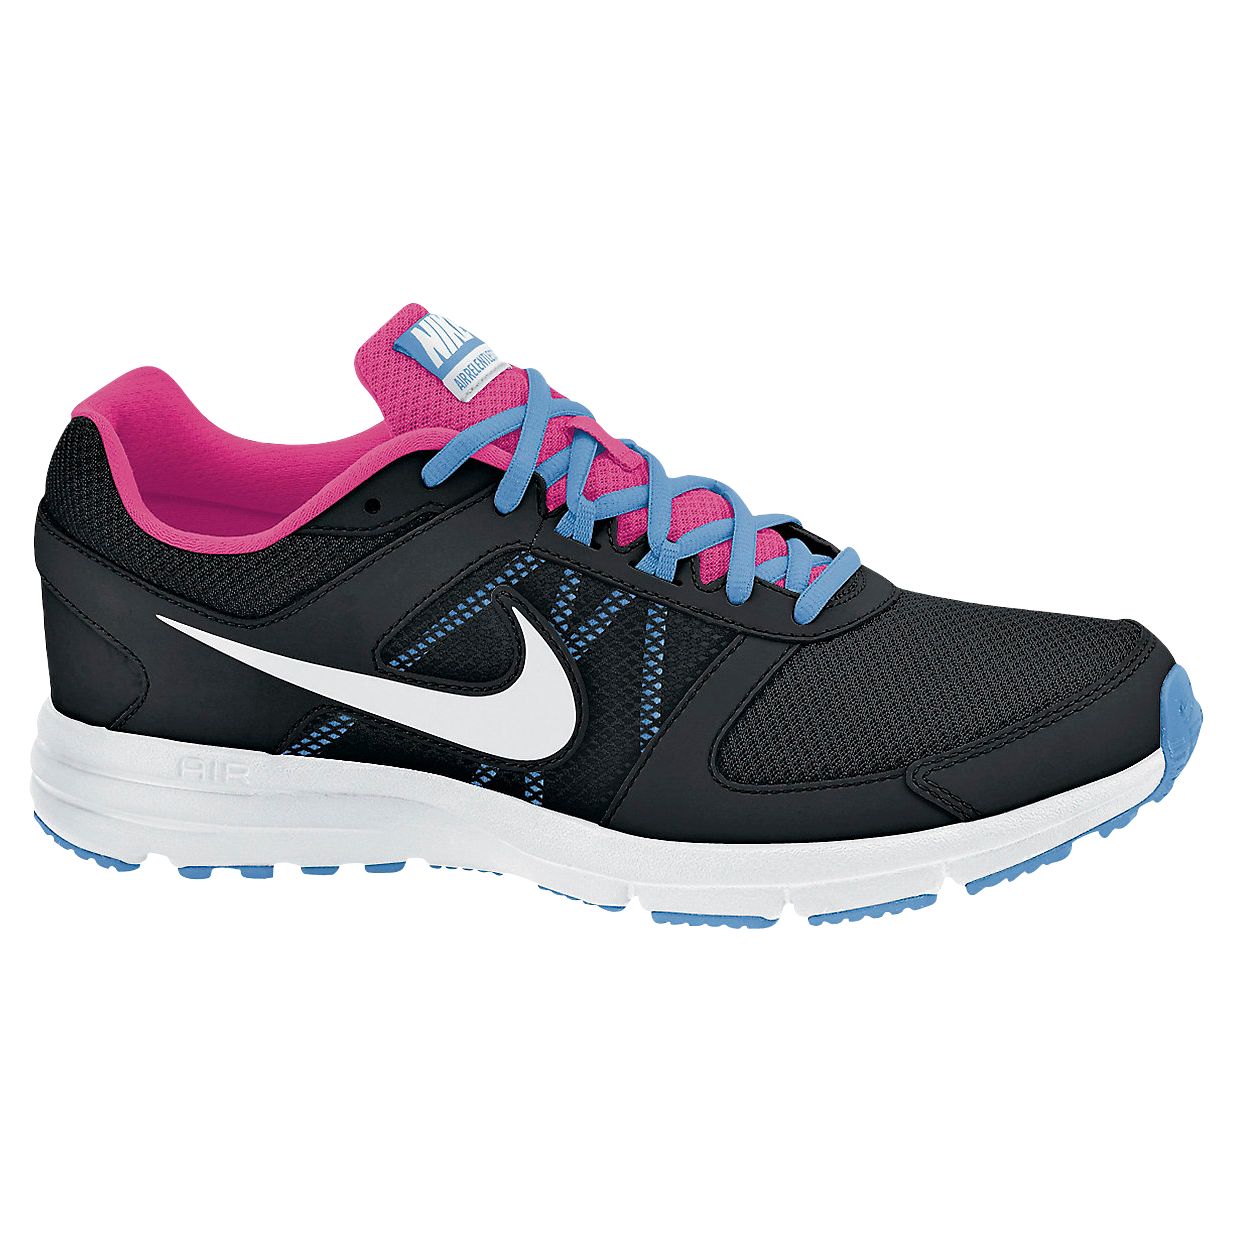 Women's Air Relentless 3 Running Shoes,